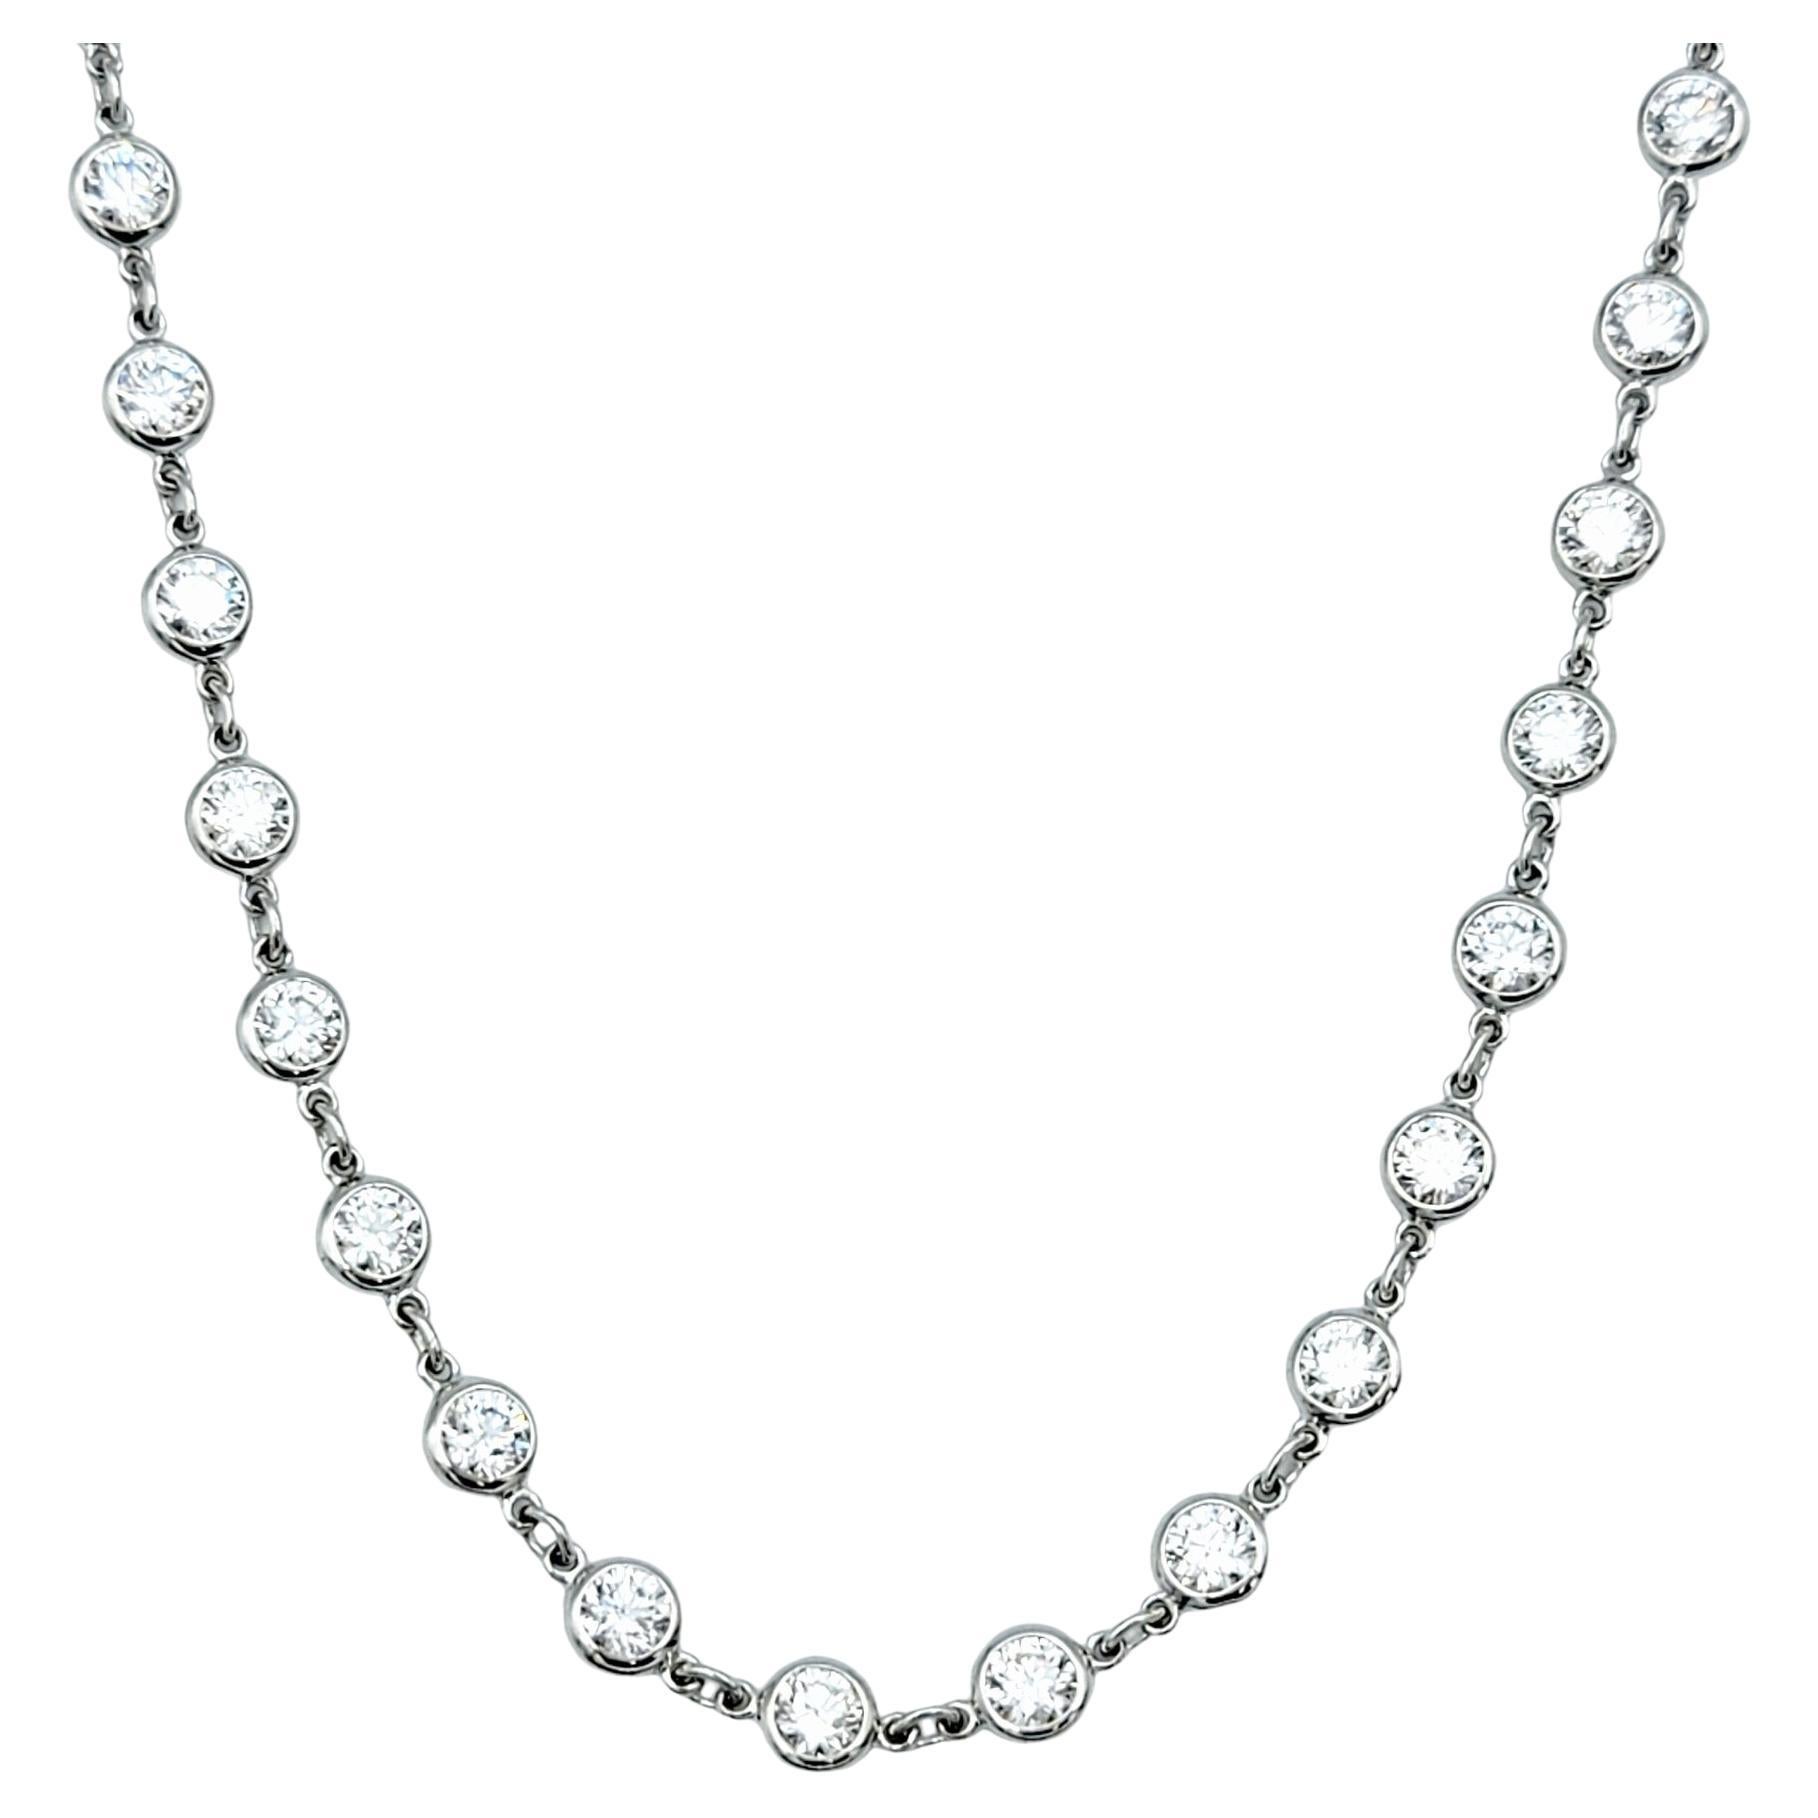 Contemporain Tiffany & Co. Elsa Peretti, collier « Diamonds By The Yard » de 15,25 carats, 38